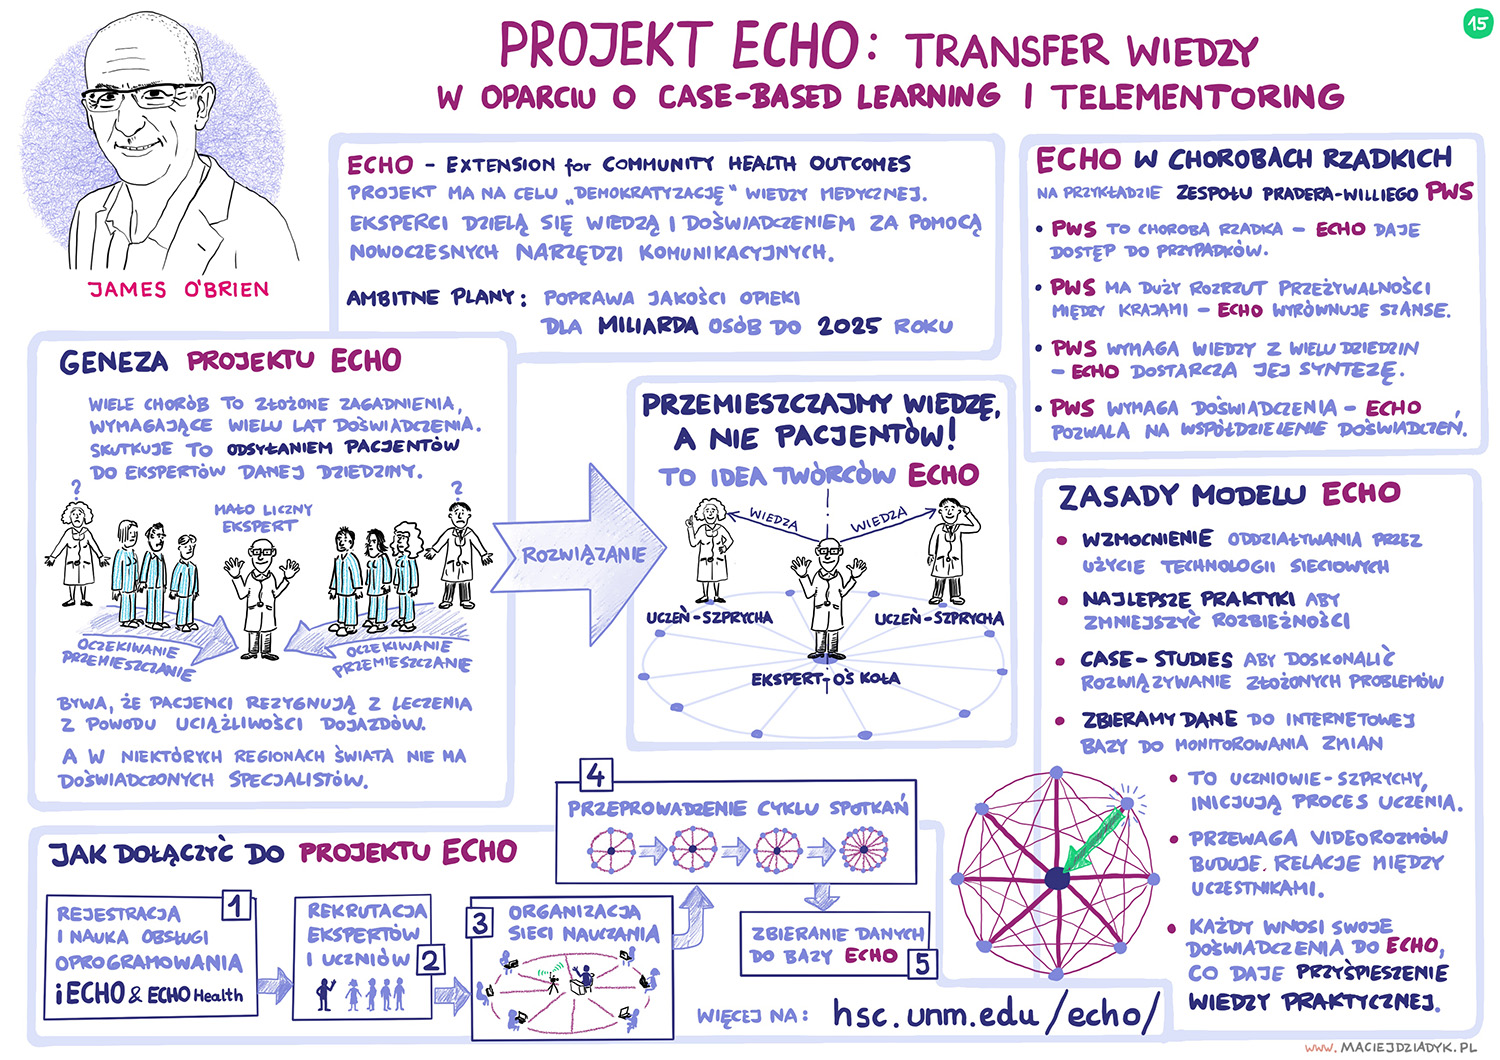 Projekt ECHO: transfer wiedzy w oparciu o case-based learning i telementoring. James O’Brien. Rys. Maciej Dziadyk maciejdziadyk.pl